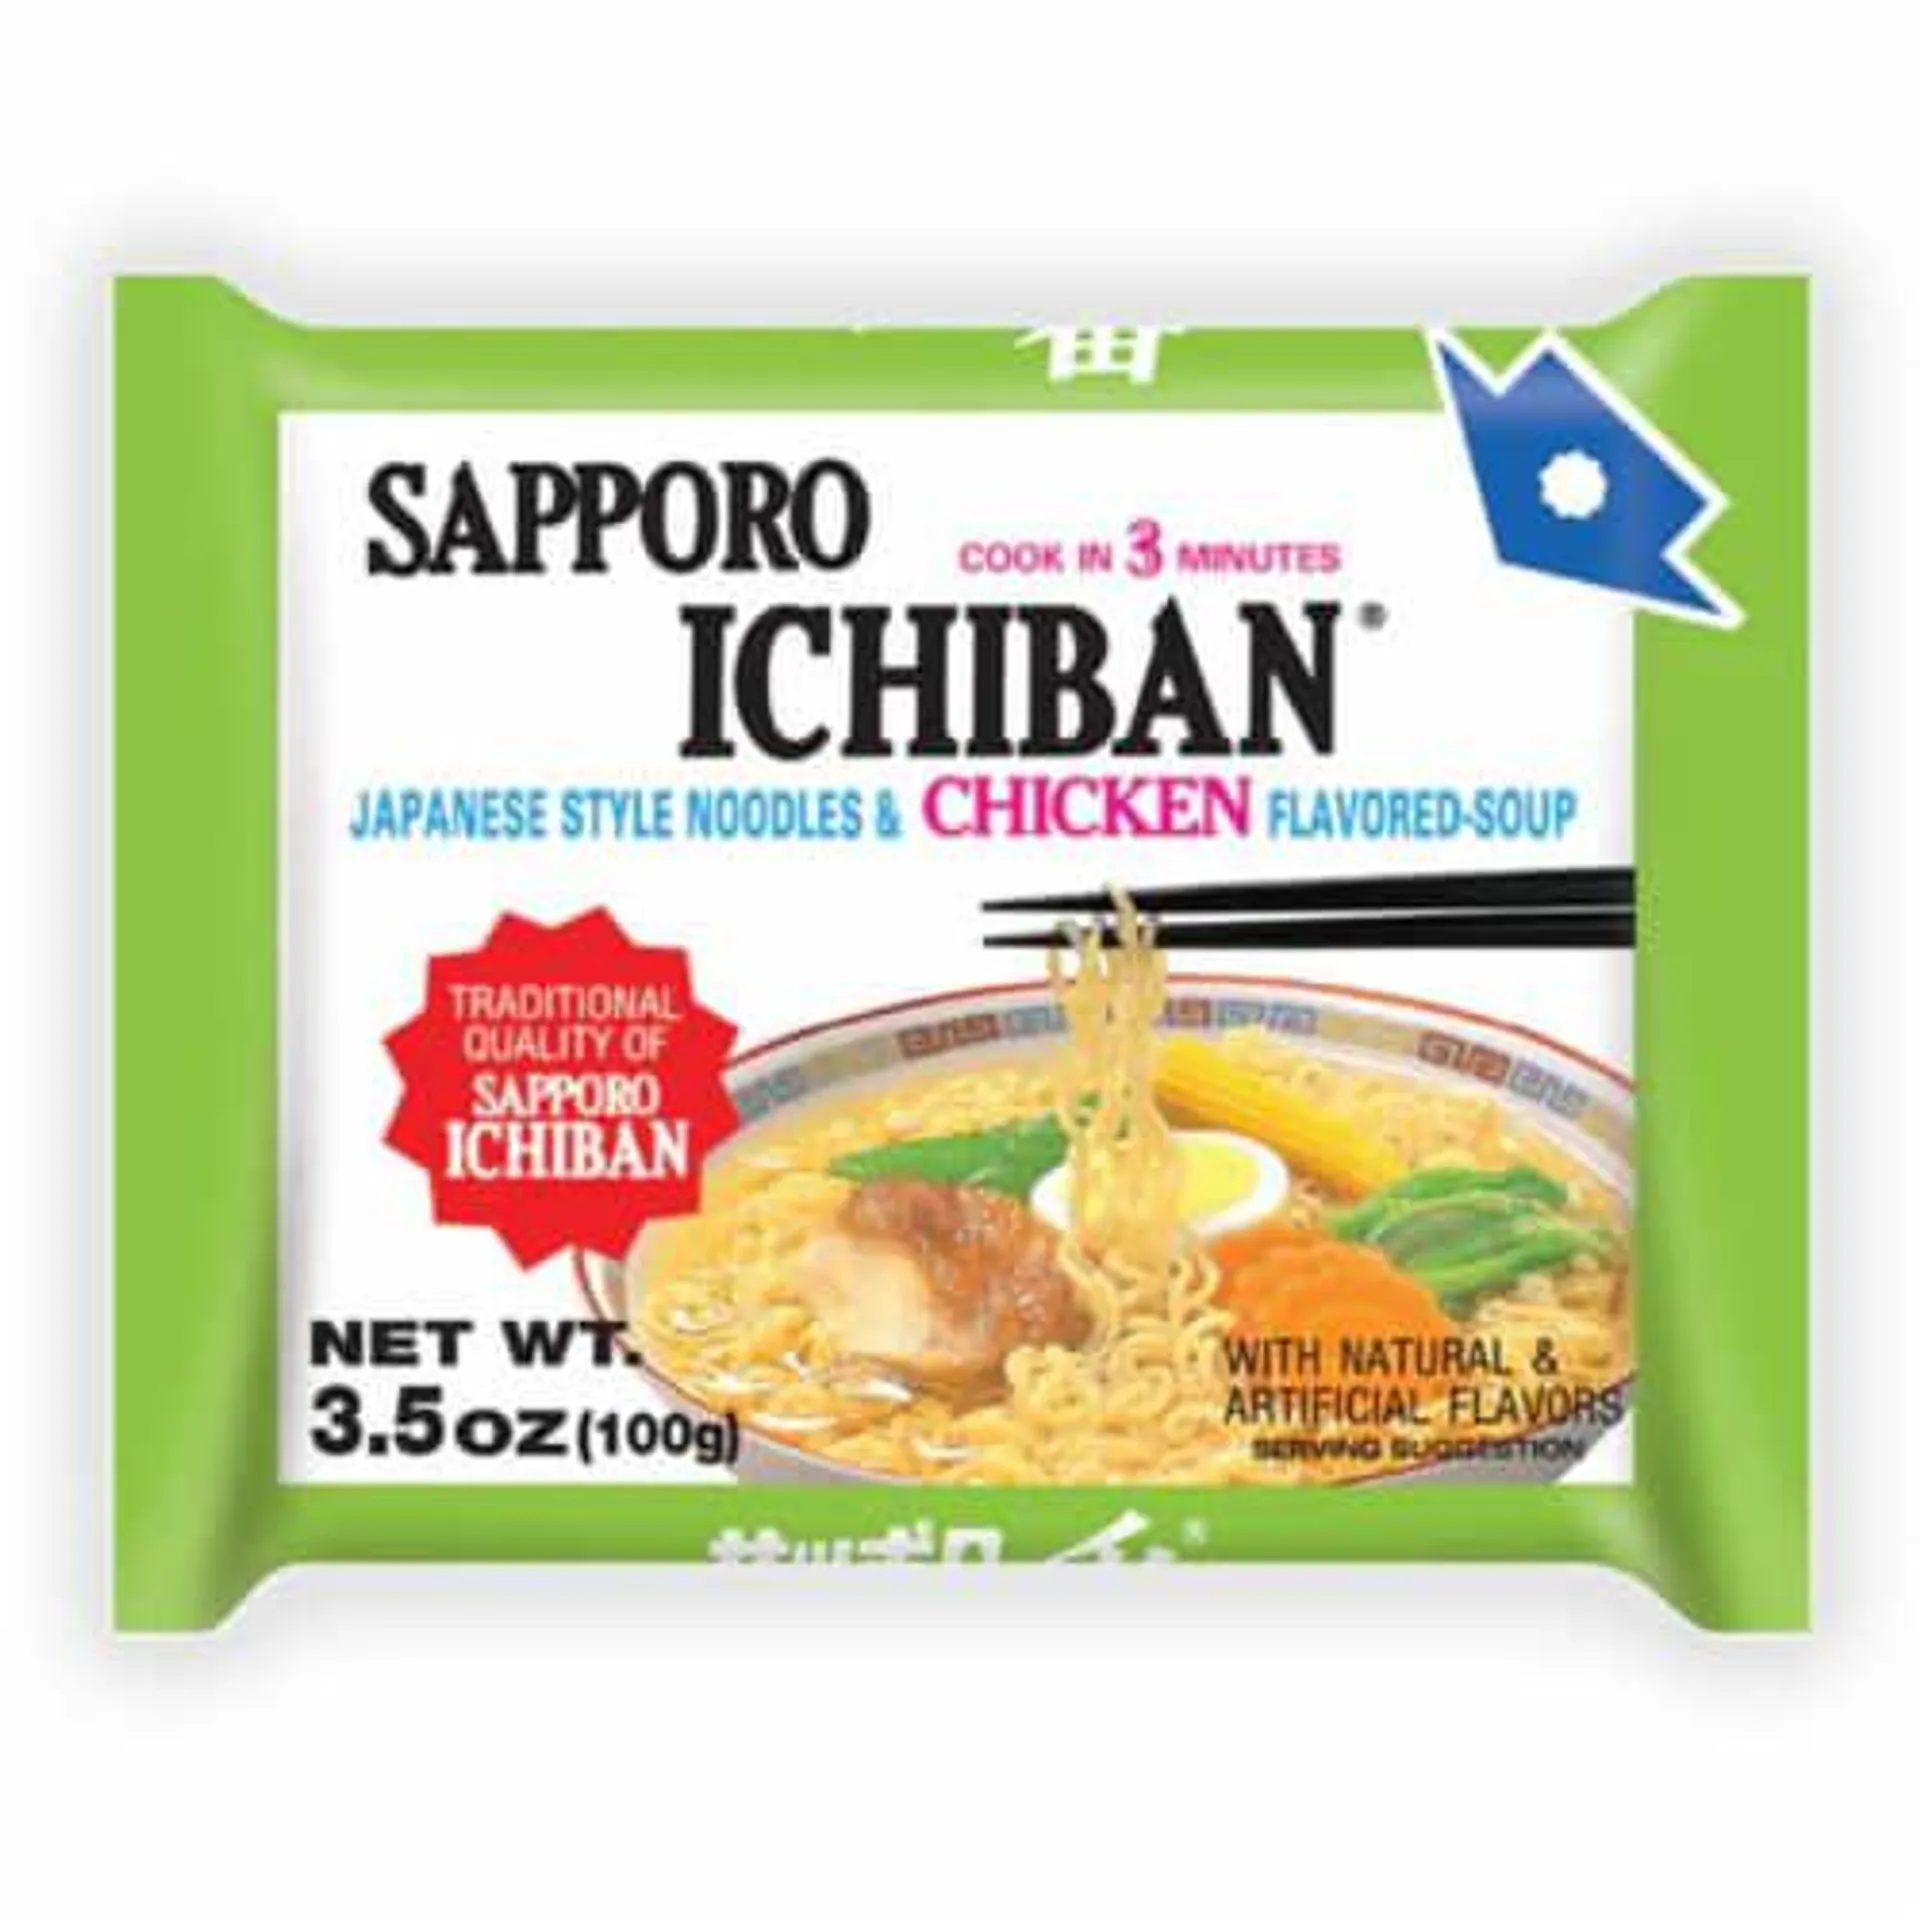 Sapporo Ichiban Chicken Flavored Soup